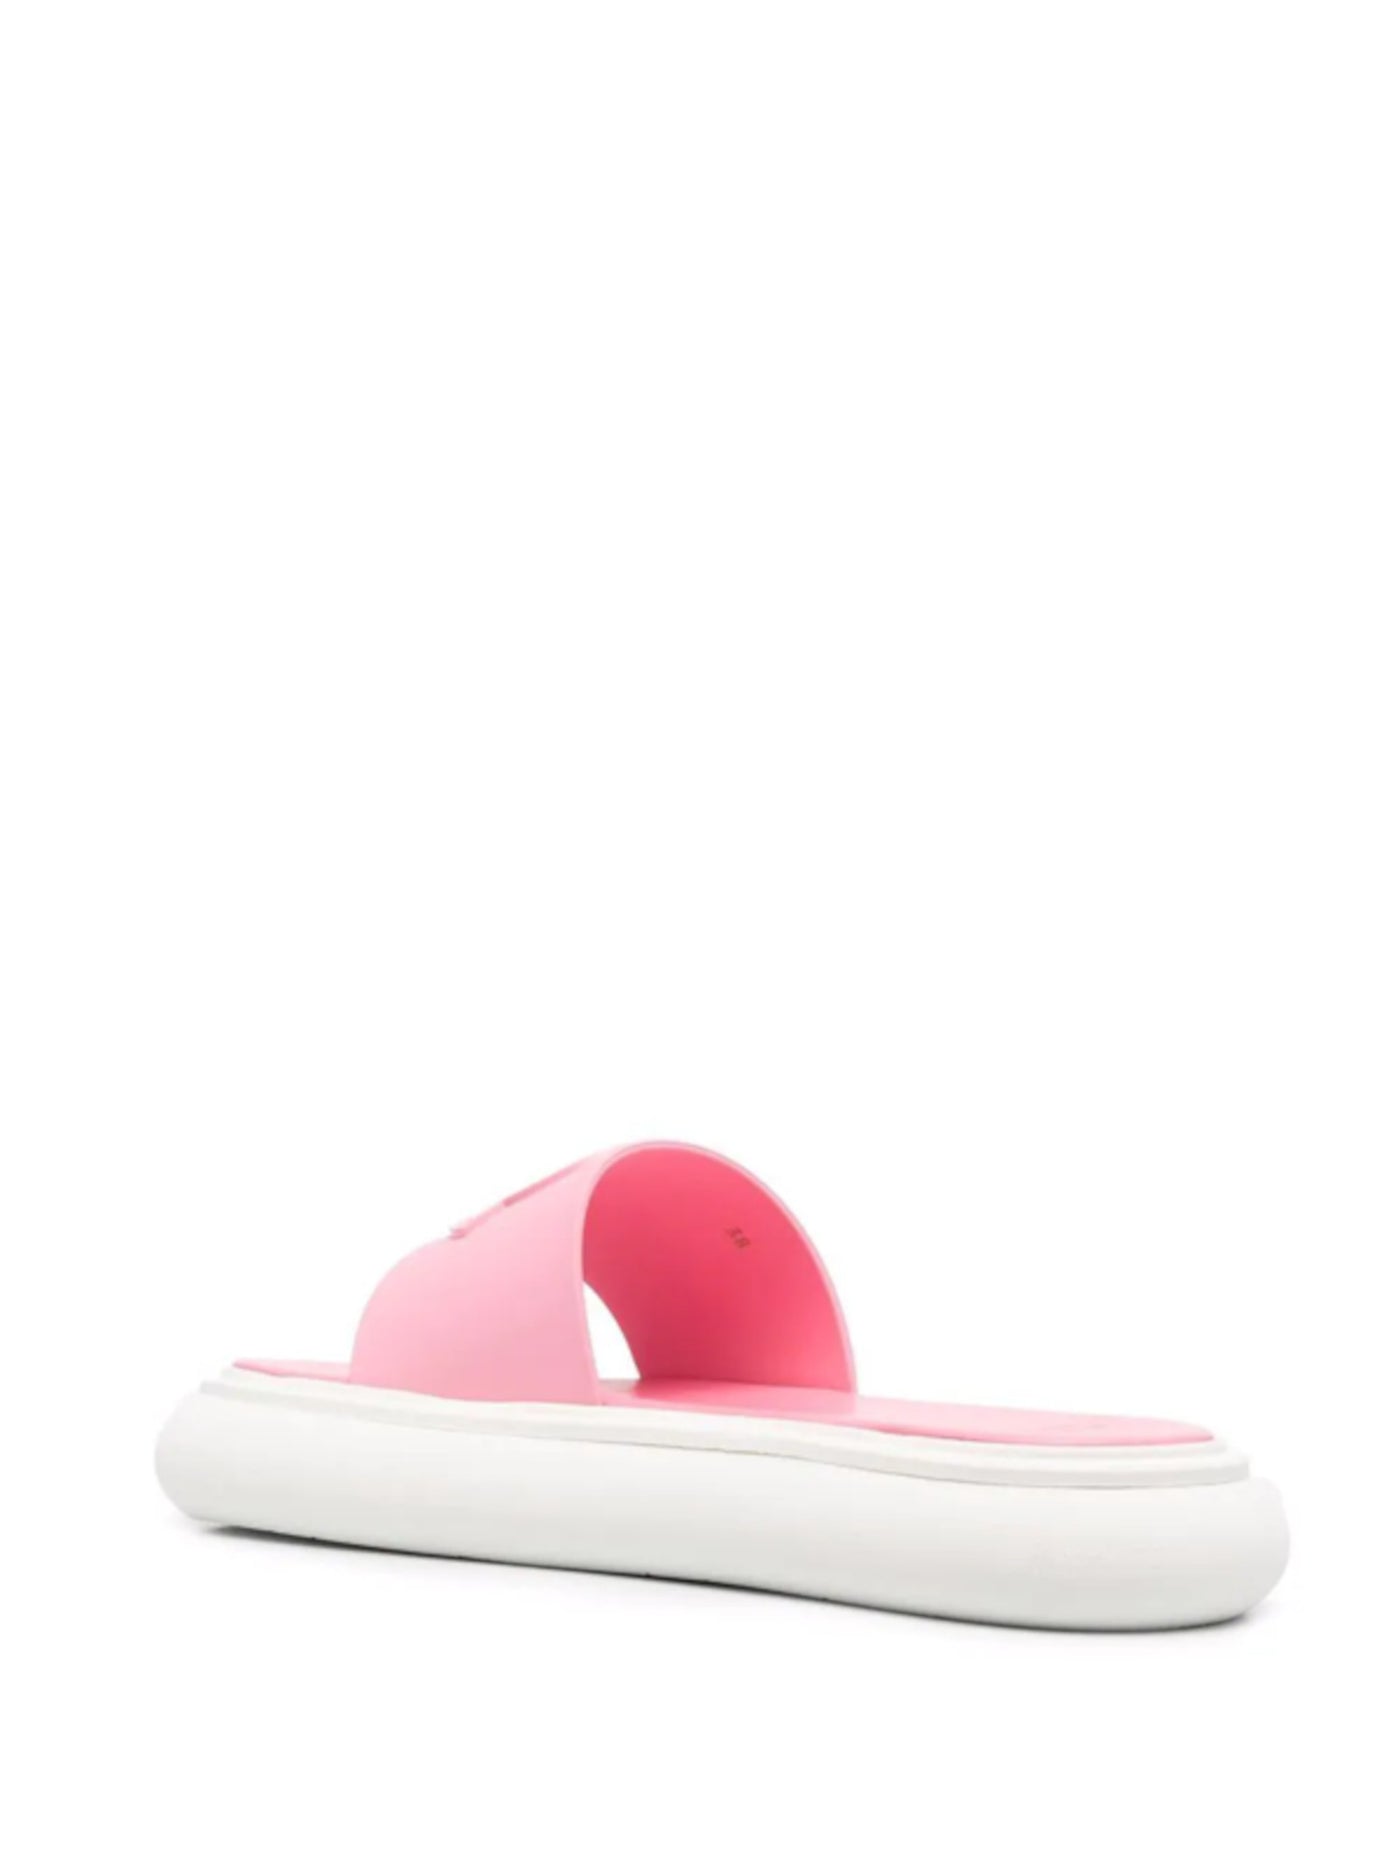 MONCLER Womens Pink Logo Slyder Round Toe Platform Slip On Slide Sandals 39